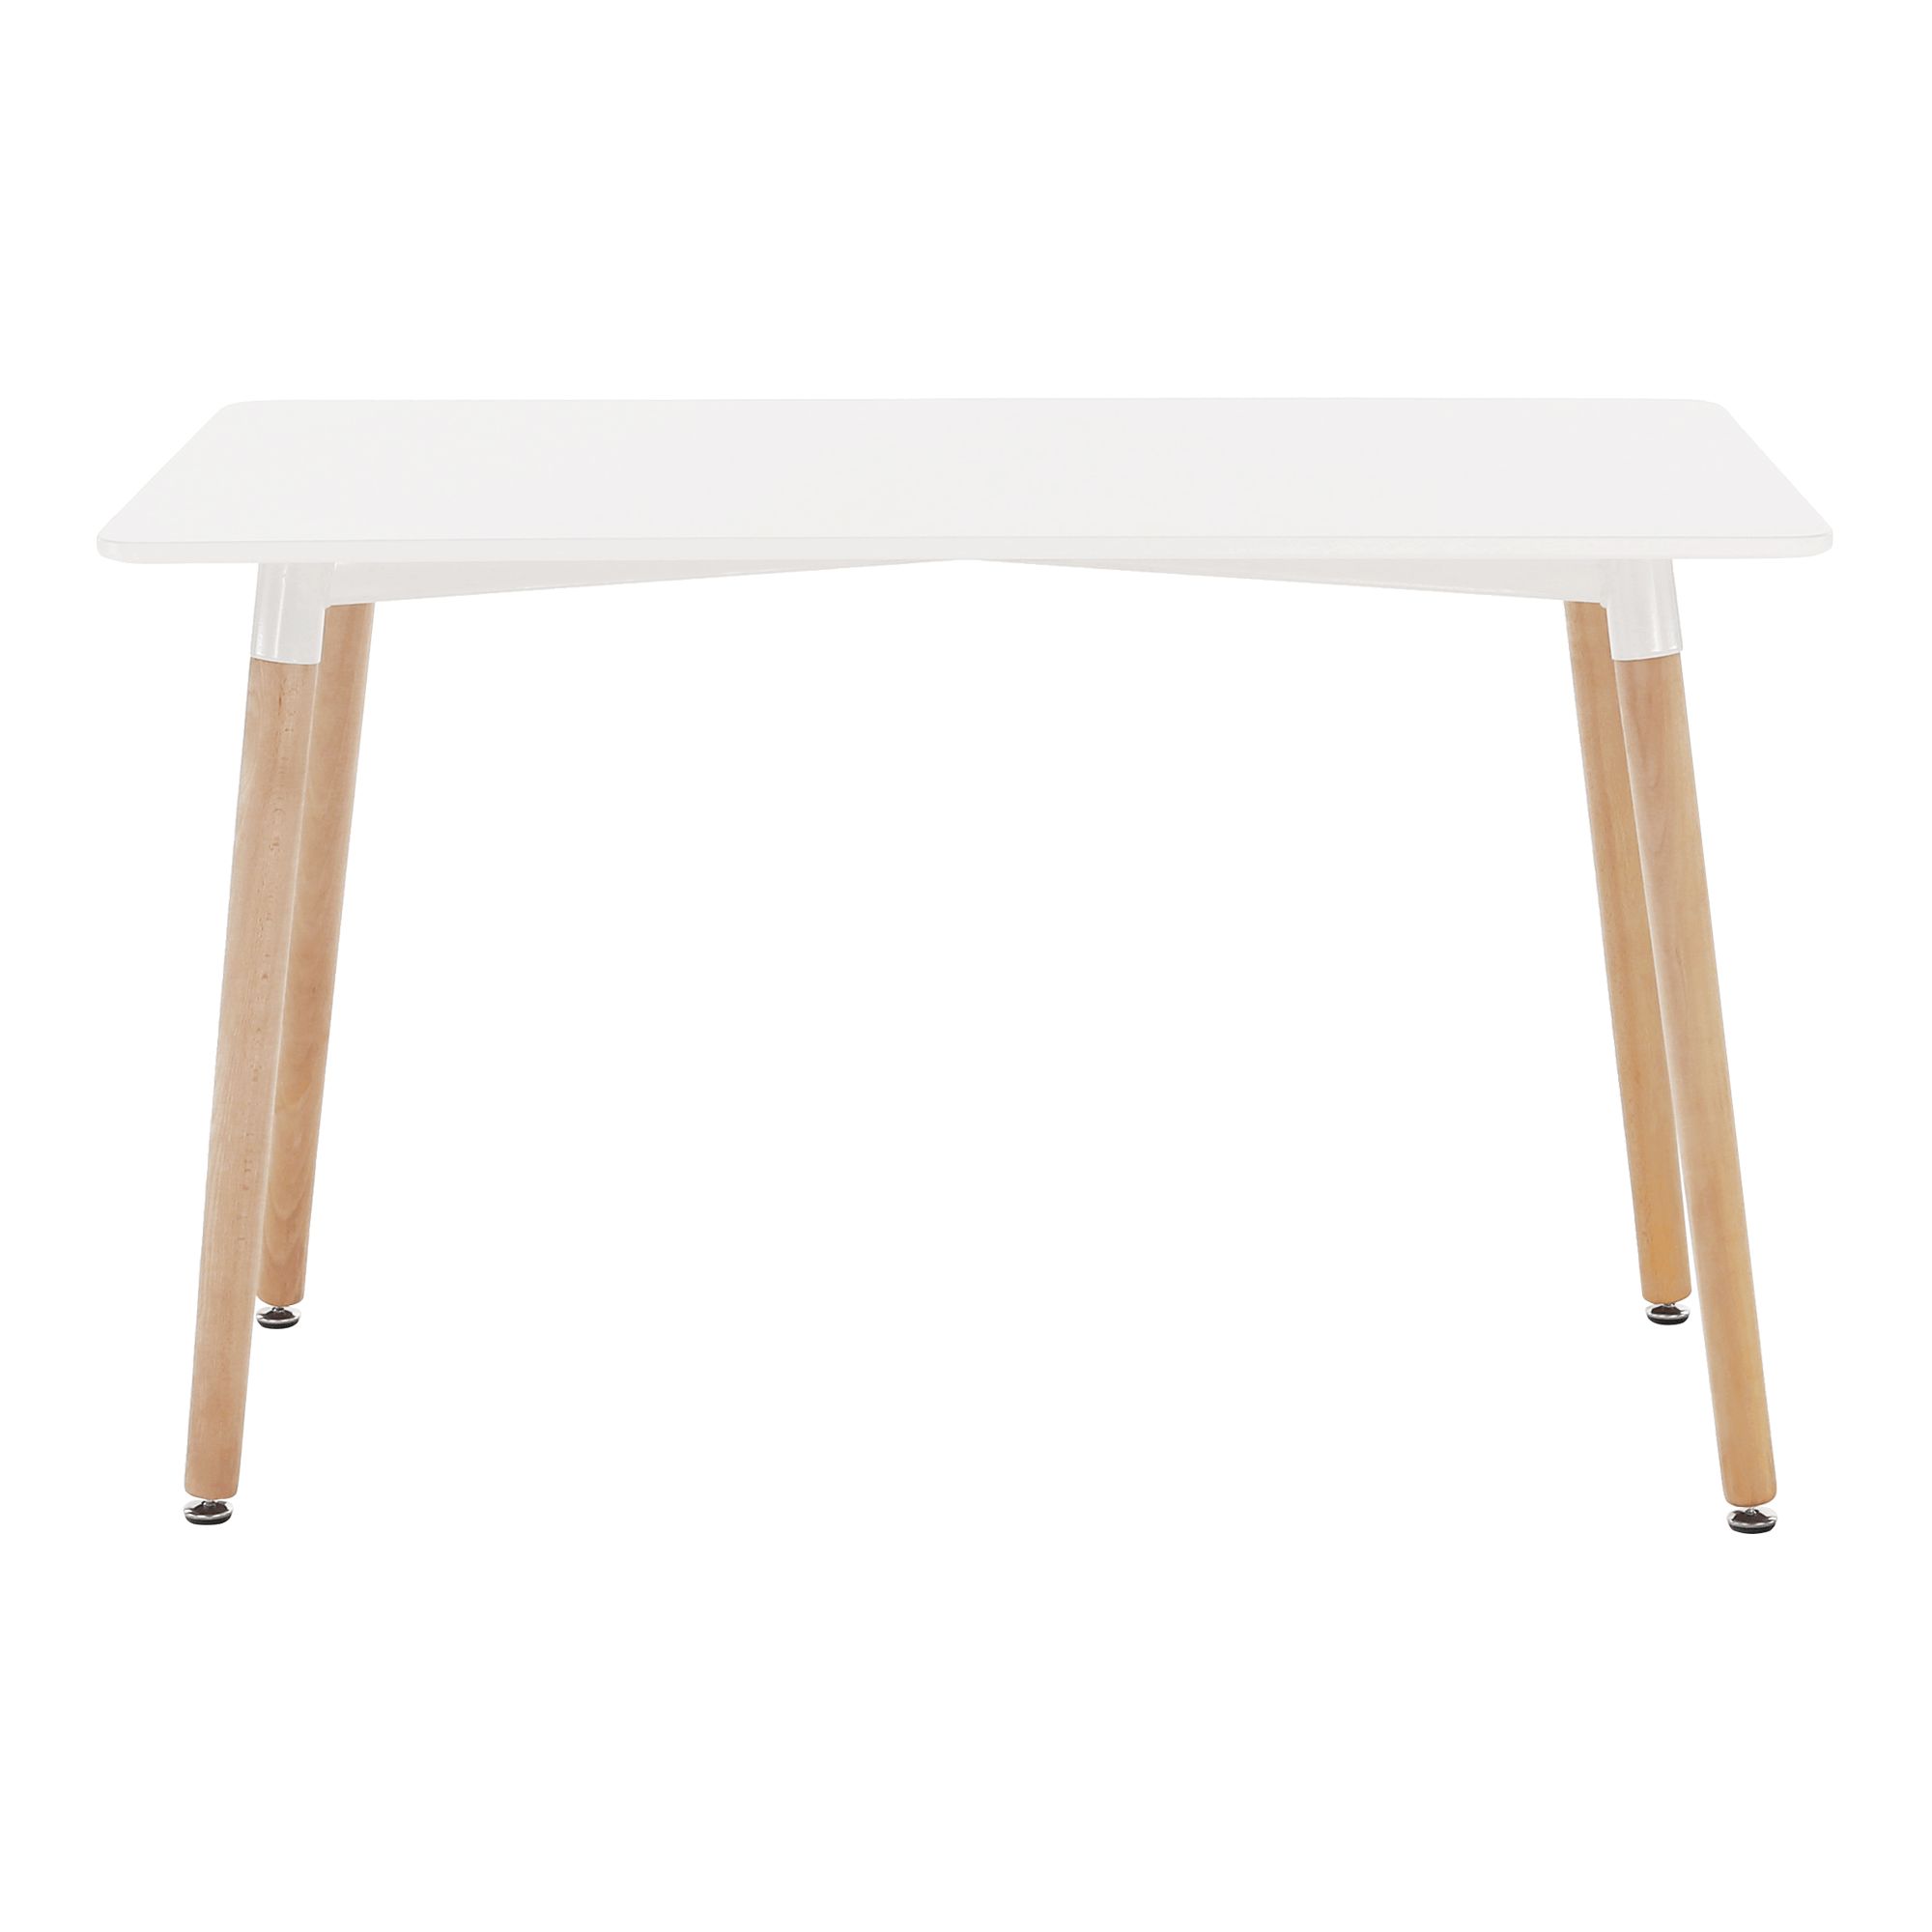 Masă dining, alb/fag, 120x70 cm, DIDIER 4 NEW